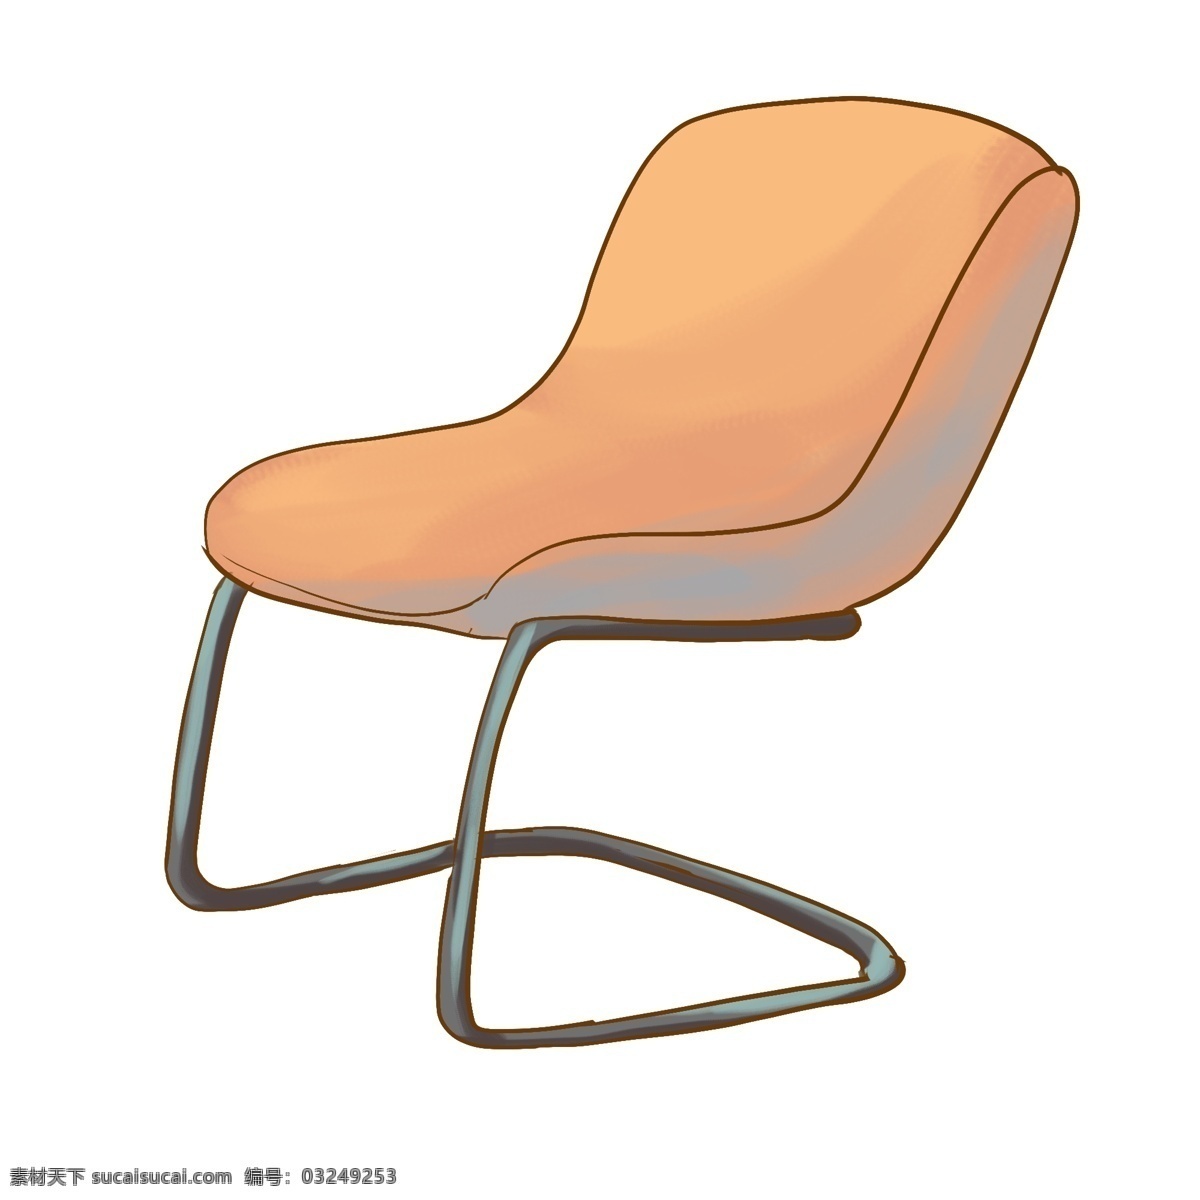 不锈钢 椅子 装饰 插画 黄色的椅子 不锈钢椅子 漂亮的椅子 家具椅子 立体椅子 精美椅子 家装椅子